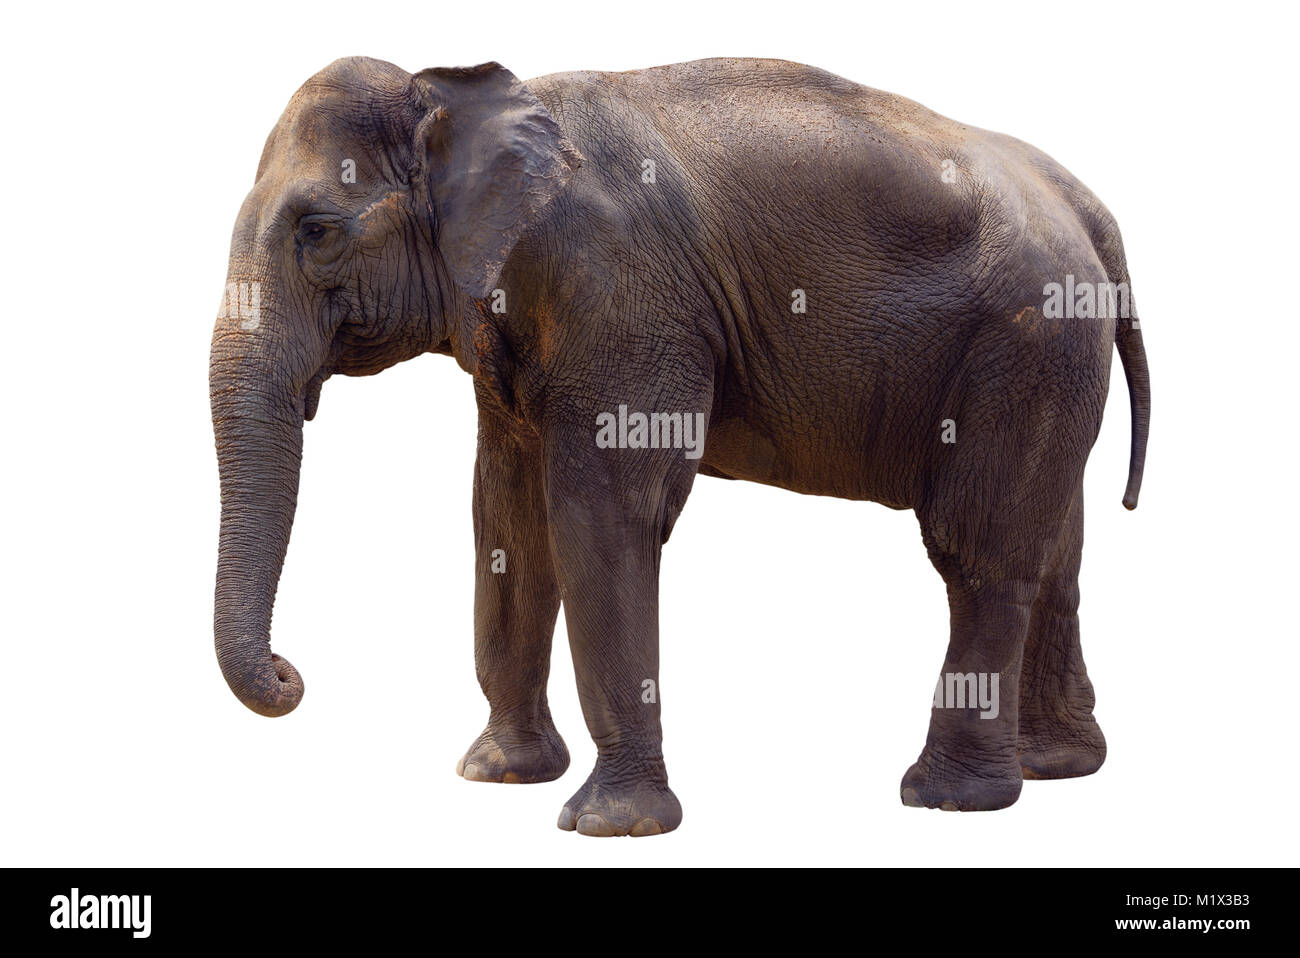 Indian elephant isolated on white Stock Photo